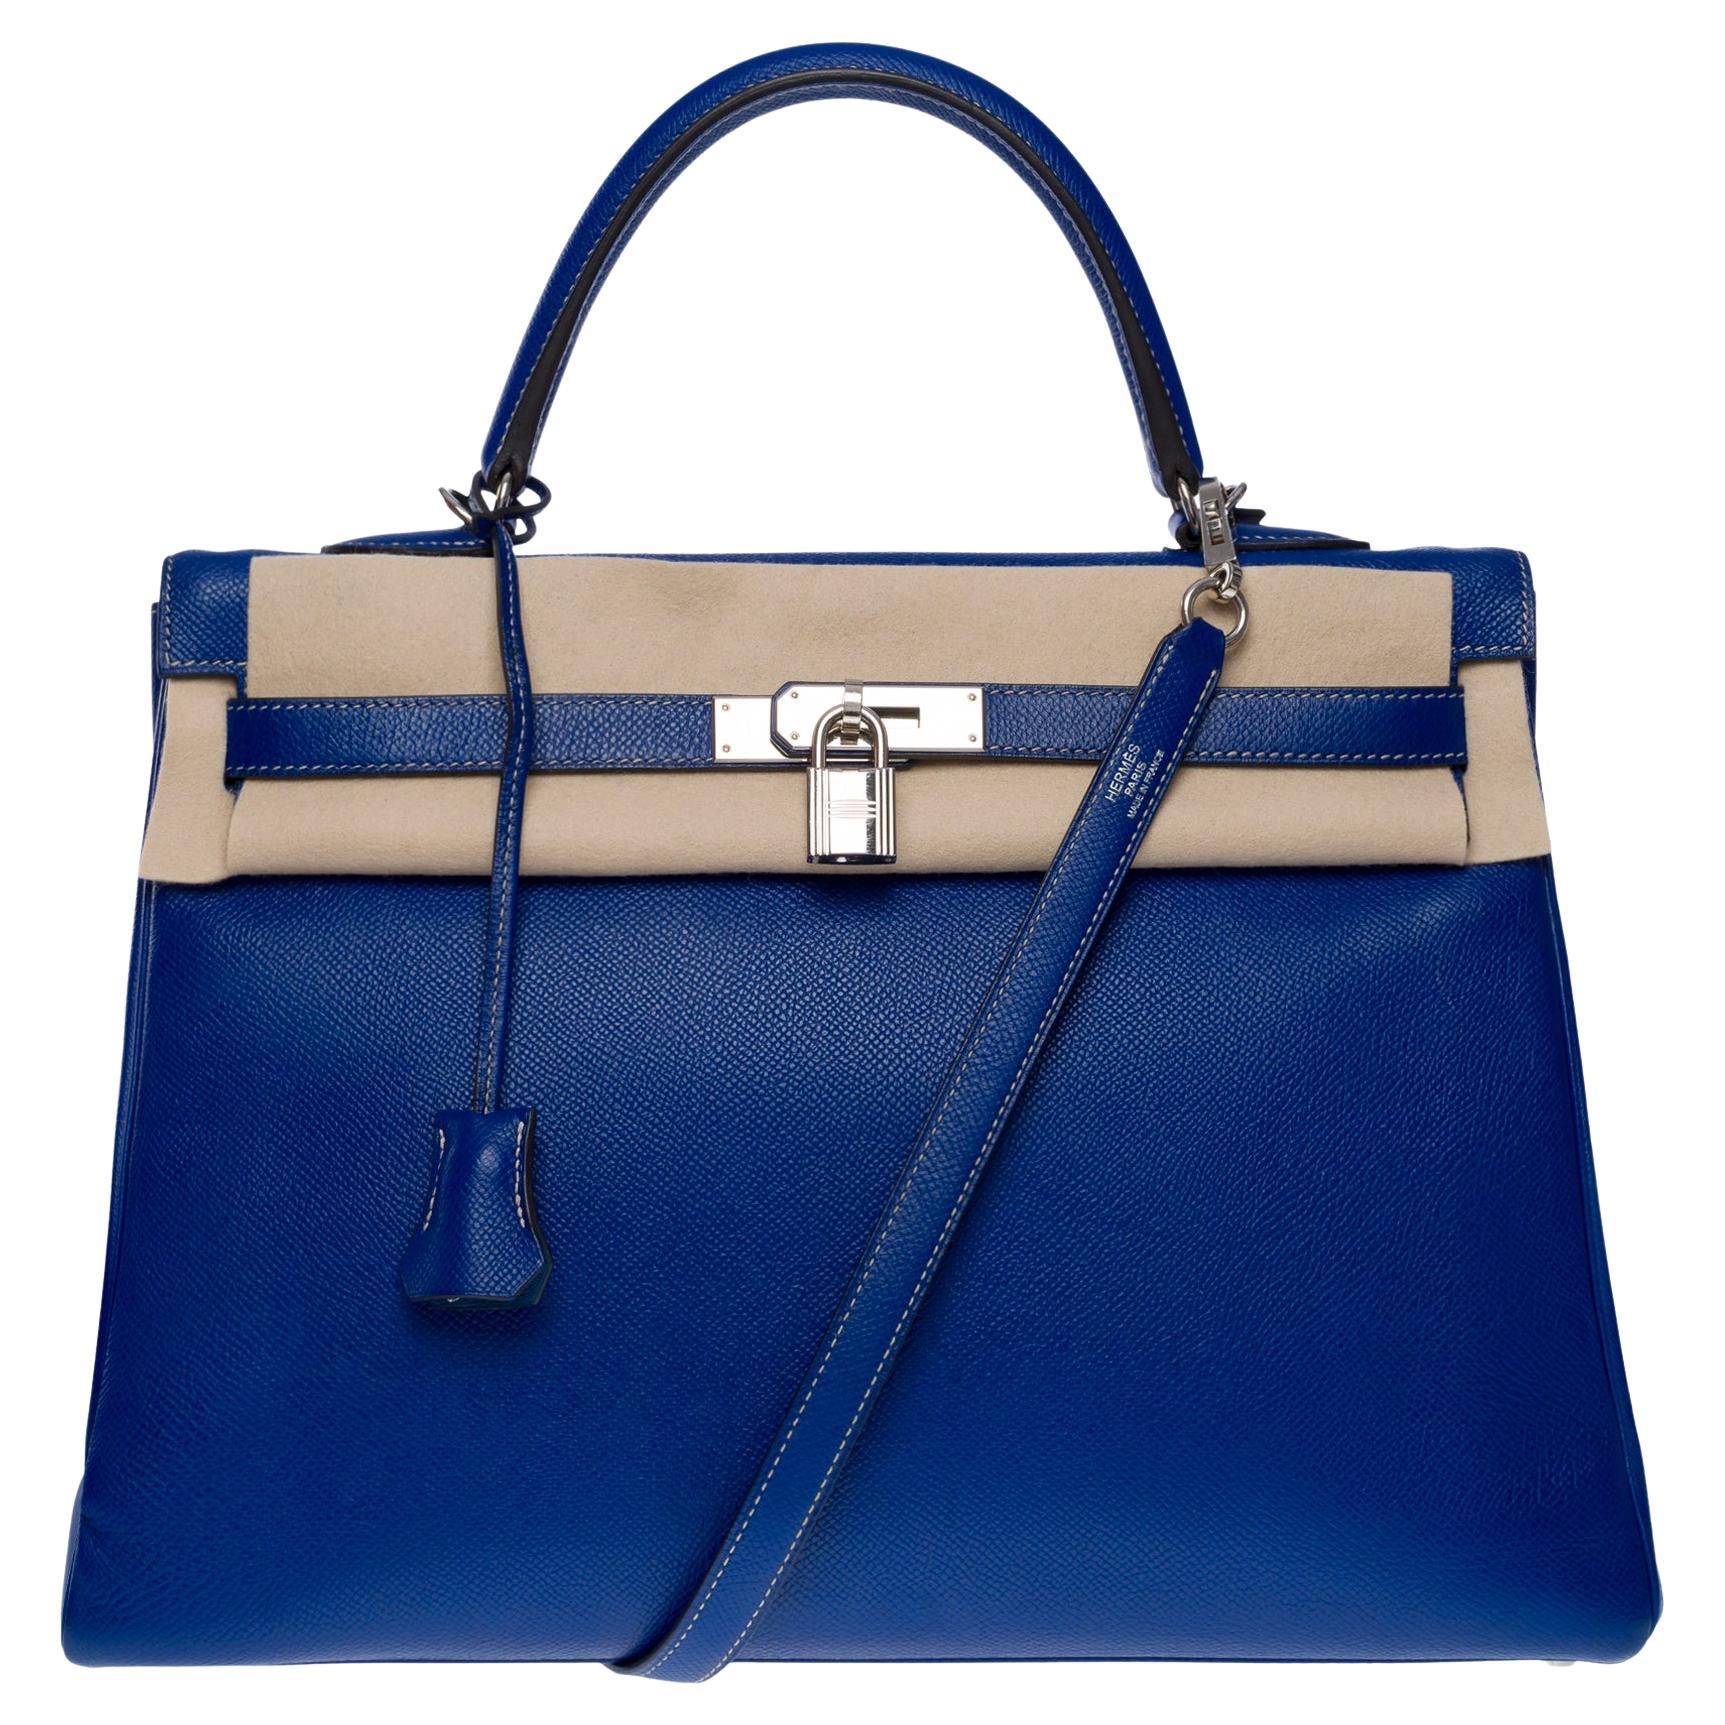 Candy Edition Hermès Kelly 35 retourne handbag strap in Blue Epsom leather, SHW